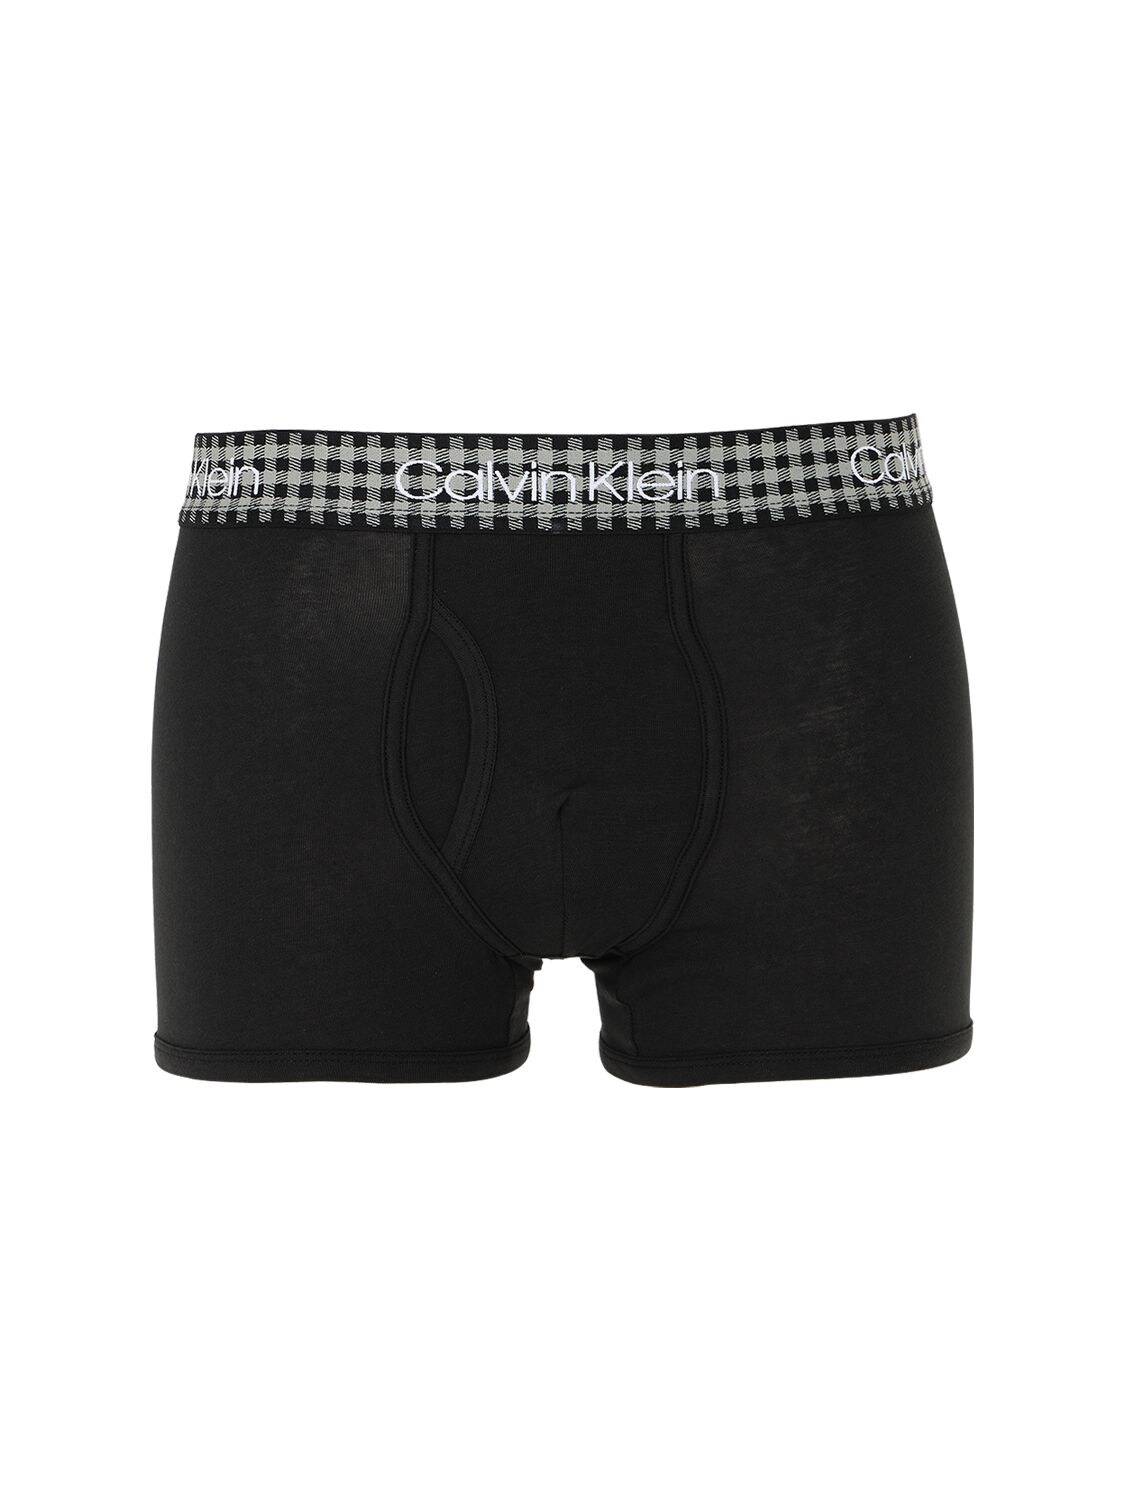 Calvin Klein Underwear Check Logo Elastic Briefs In Black